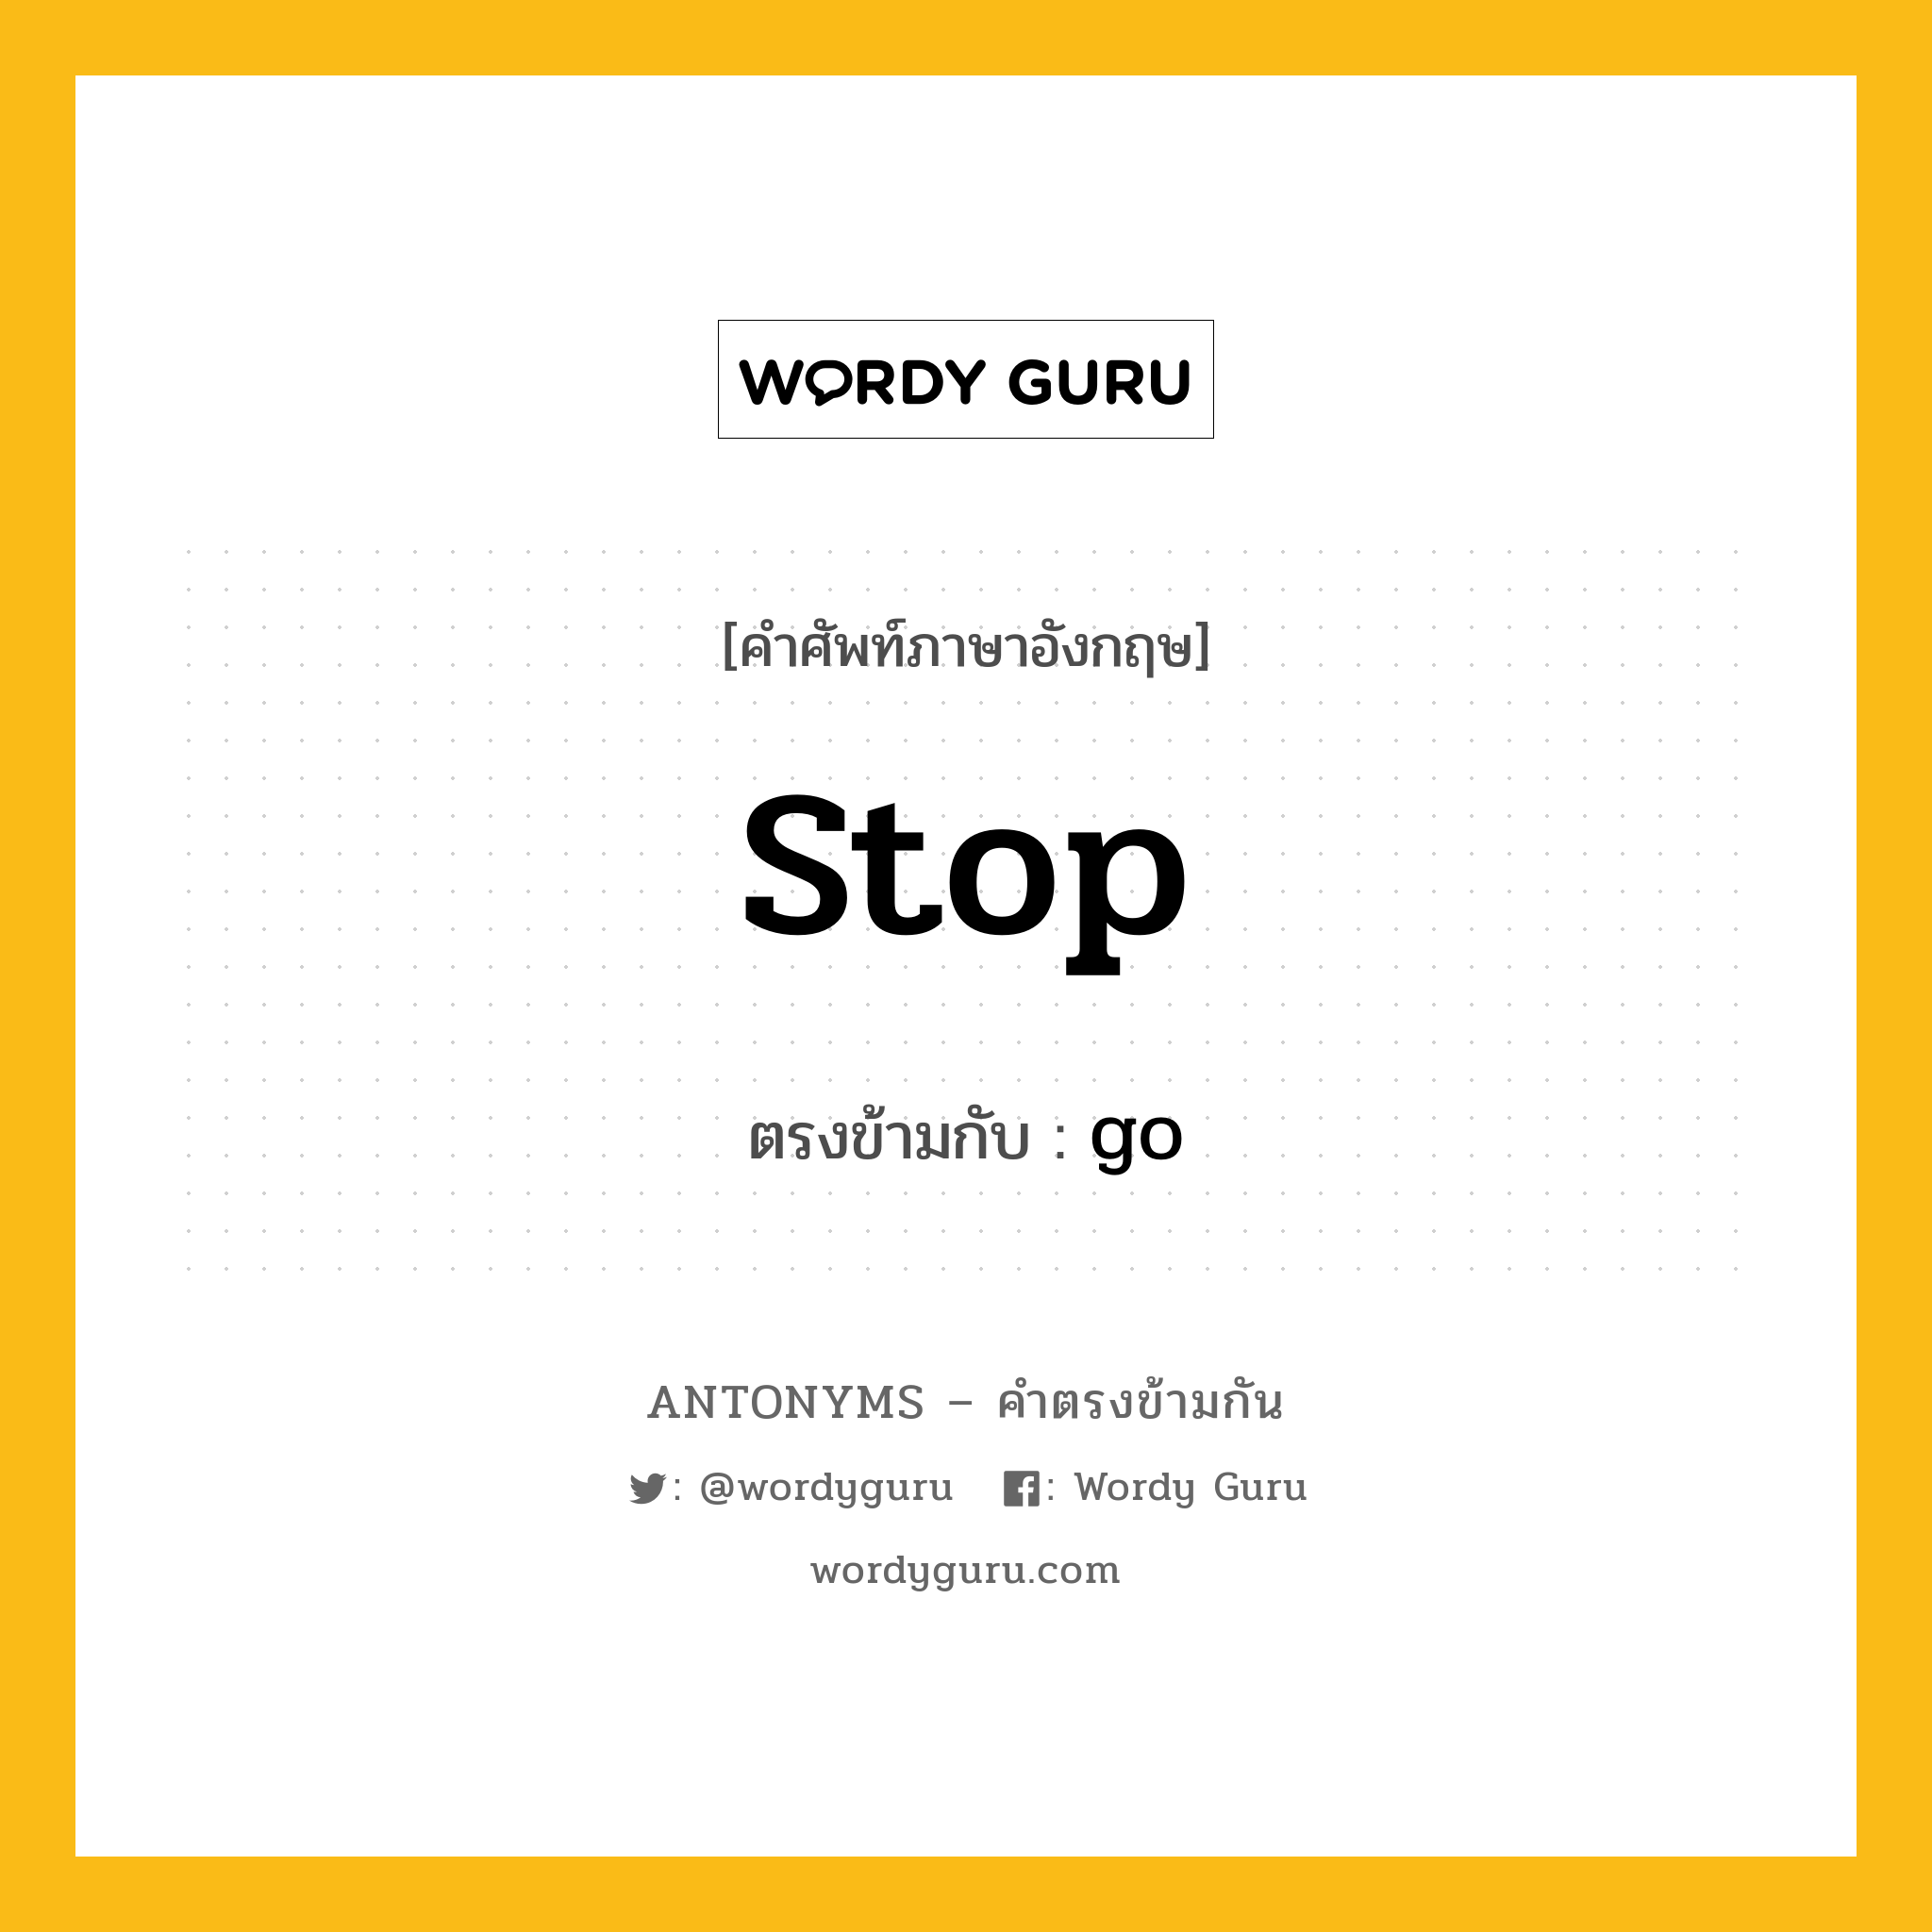 stop เป็นคำตรงข้ามกับคำไหนบ้าง?, คำศัพท์ภาษาอังกฤษ stop ตรงข้ามกับ go หมวด go